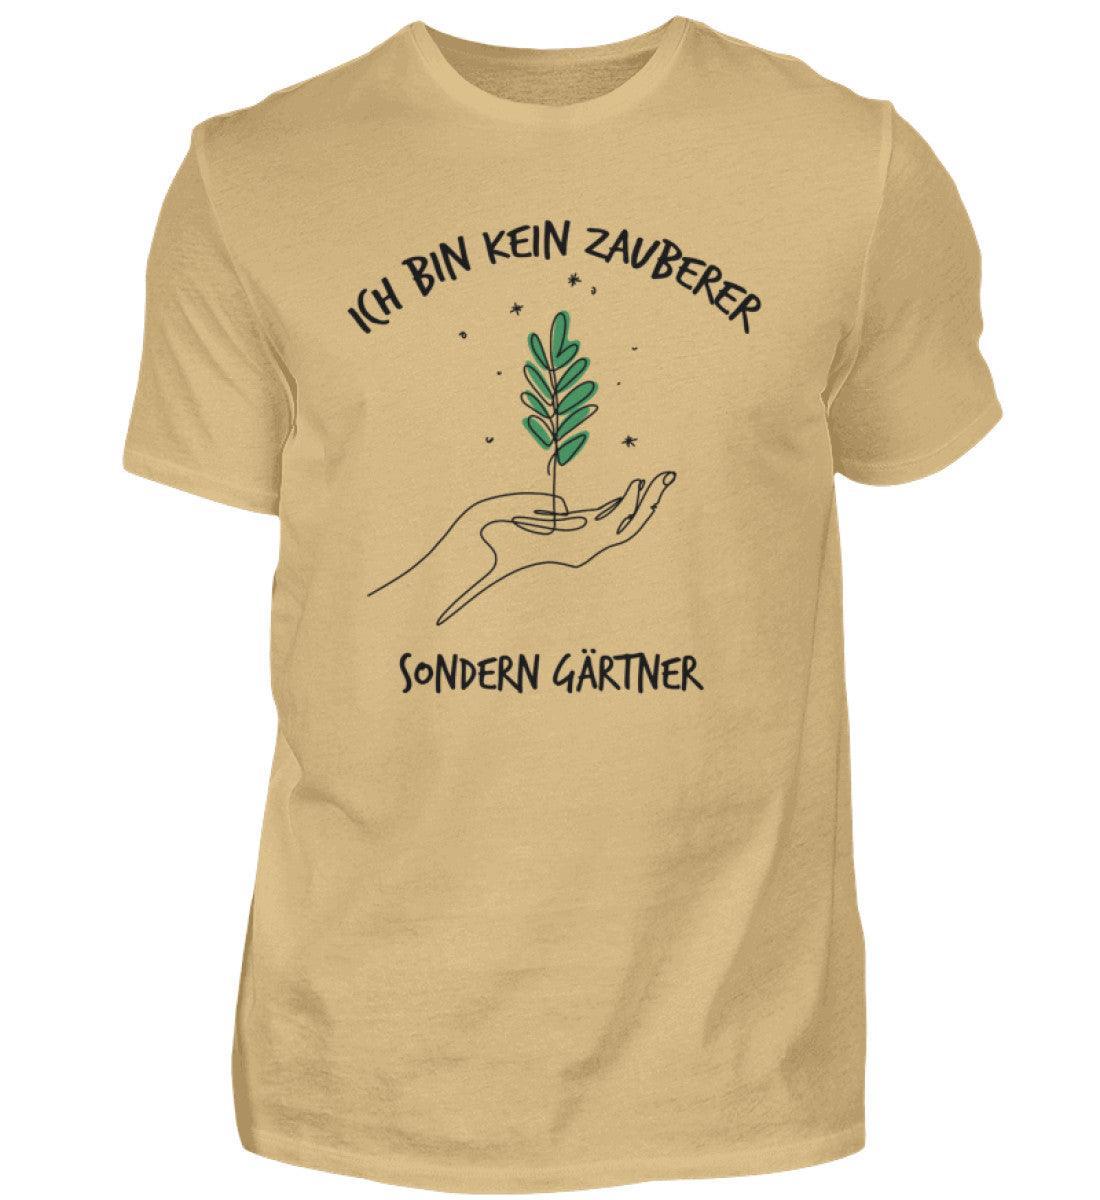 Ich bin kein Zauberer, sondern Gärtner - Unisex Shirt - PflanzenFan